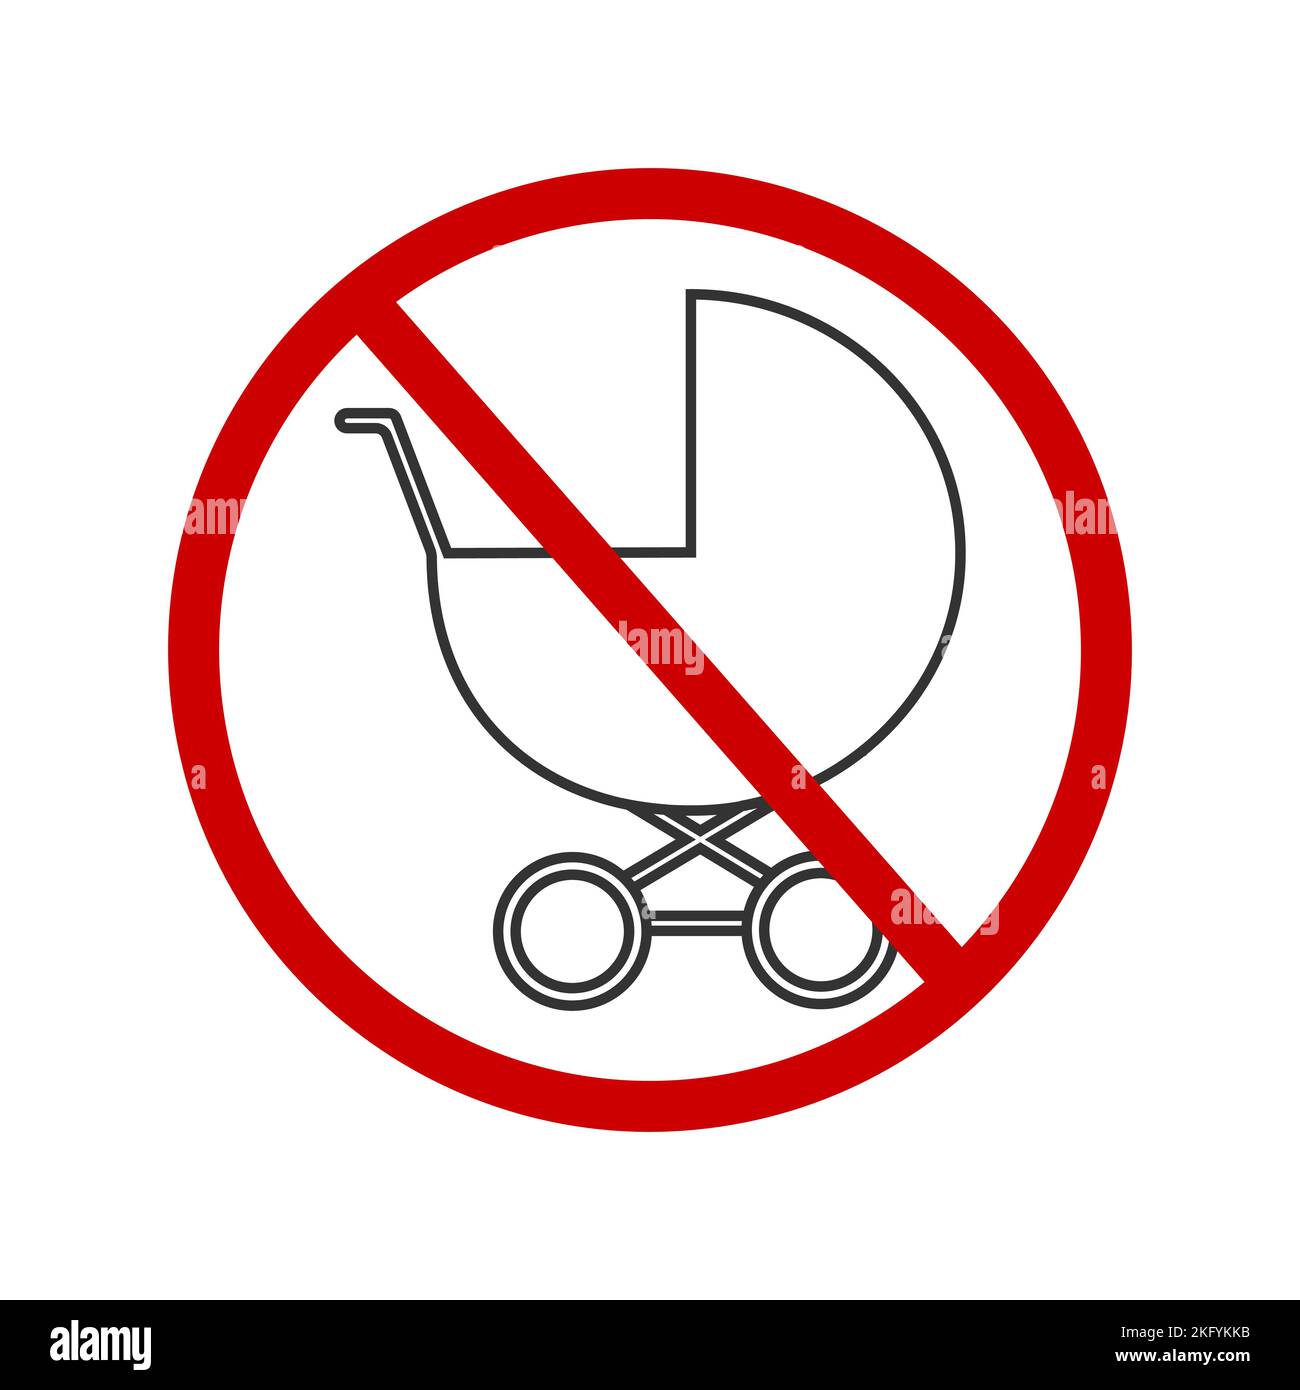 Icona No baby prams. Adesivo zona vietata ai bambini per i luoghi pubblici. Pittogramma del carrello attraversato da un cartello rosso di divieto. Illustrazione grafica vettoriale. Illustrazione Vettoriale